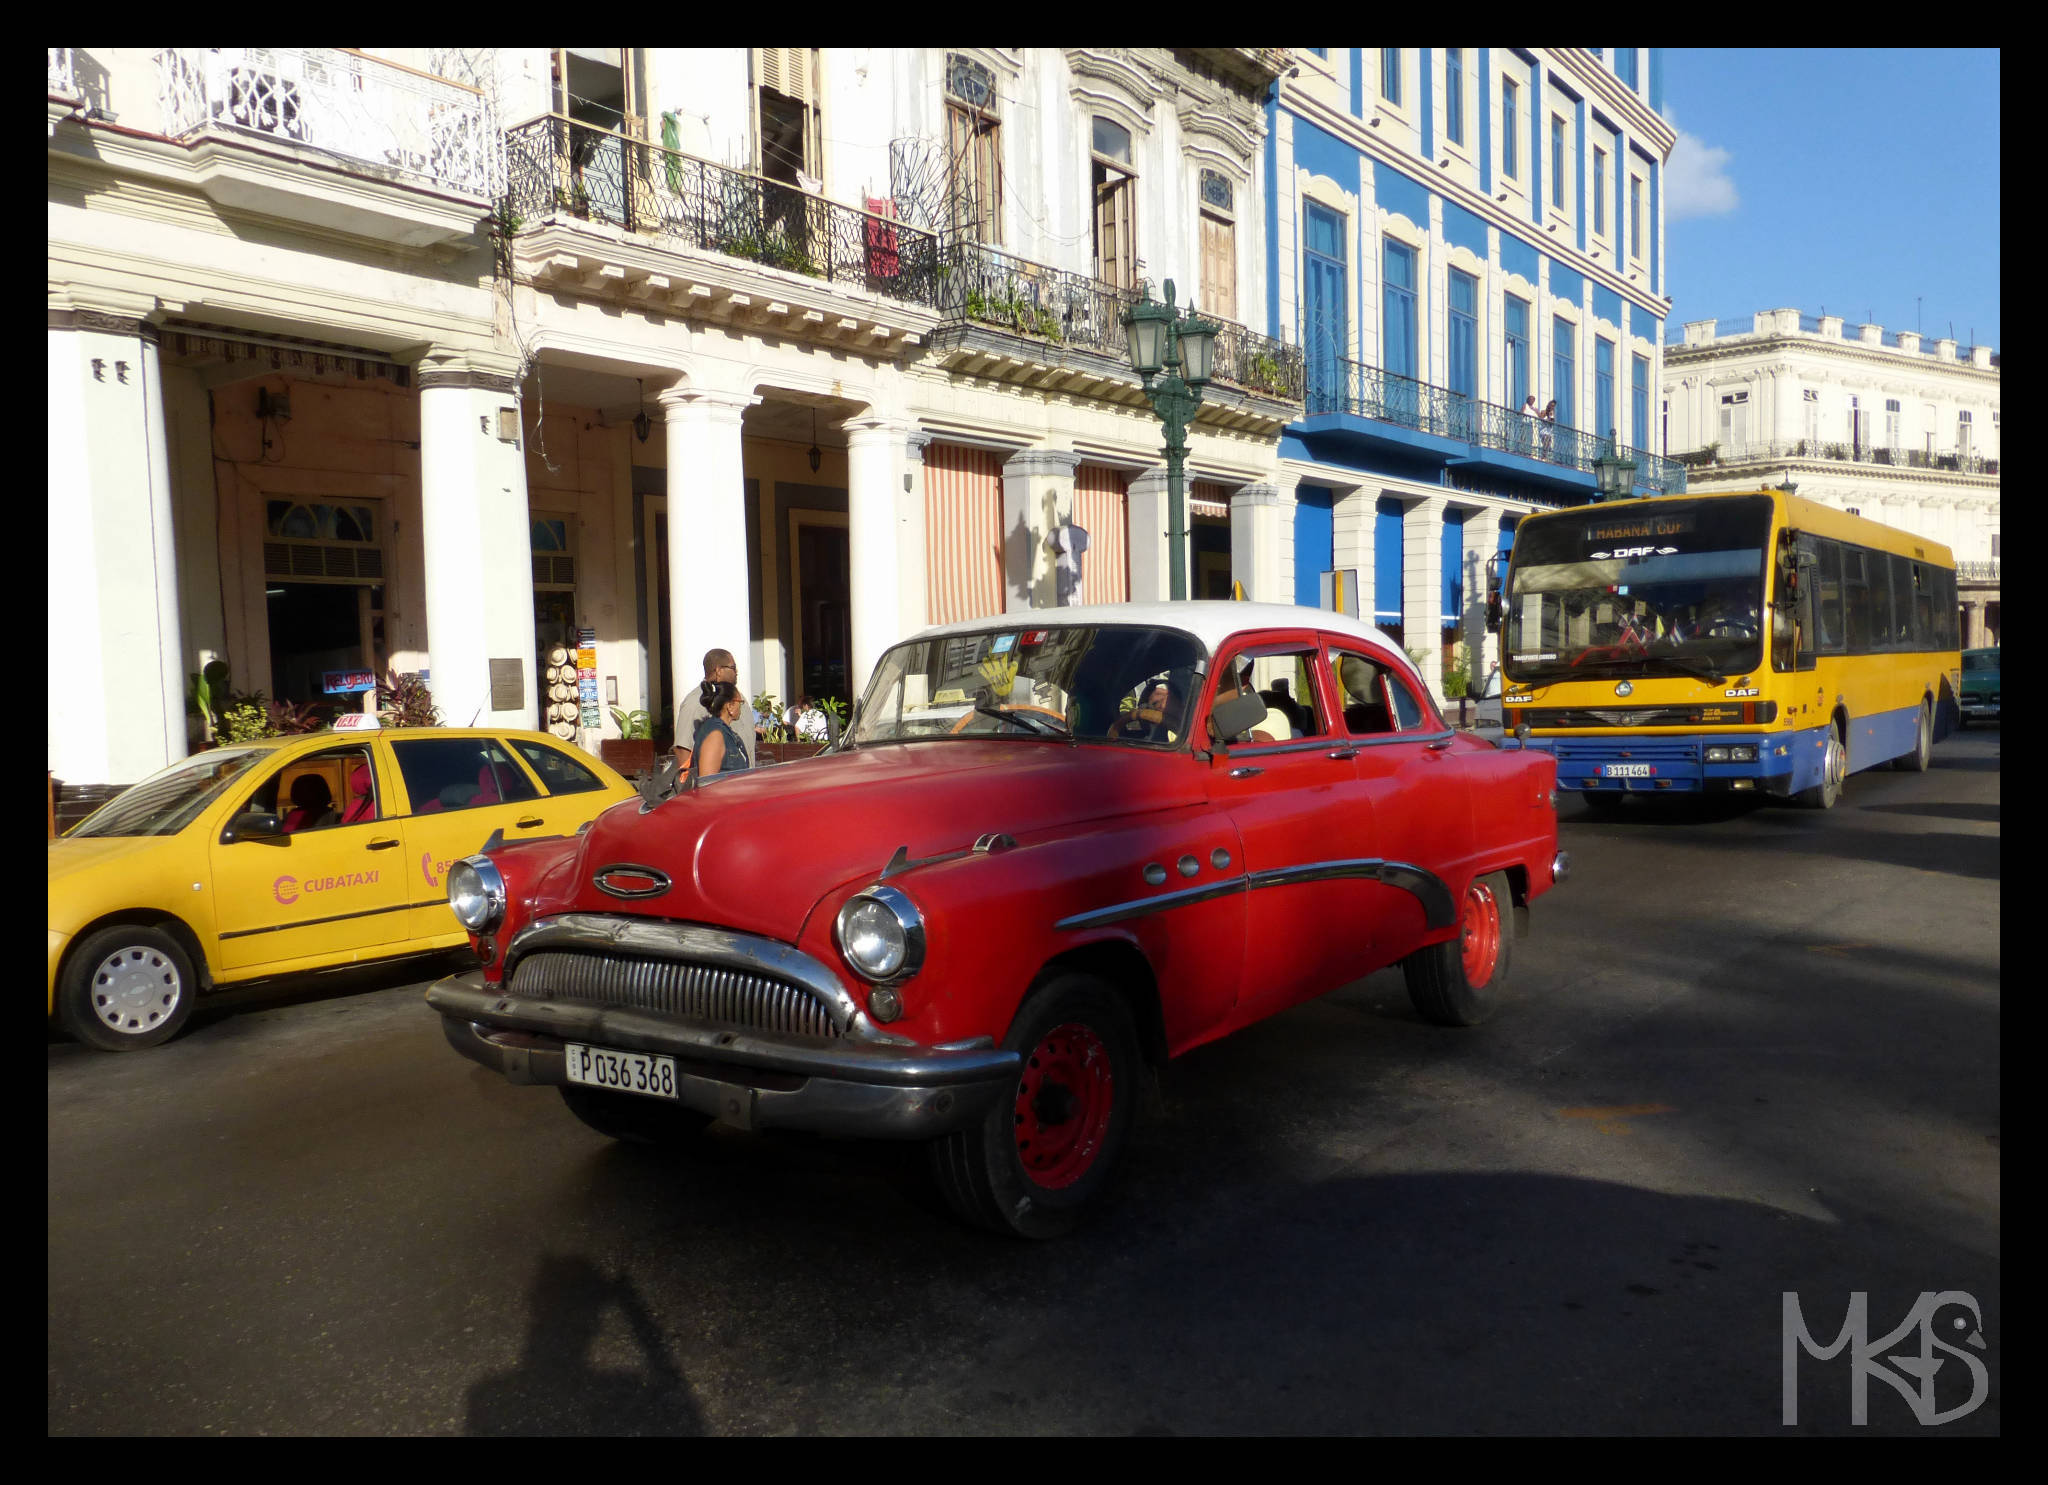 An oldtimer, Cuba 